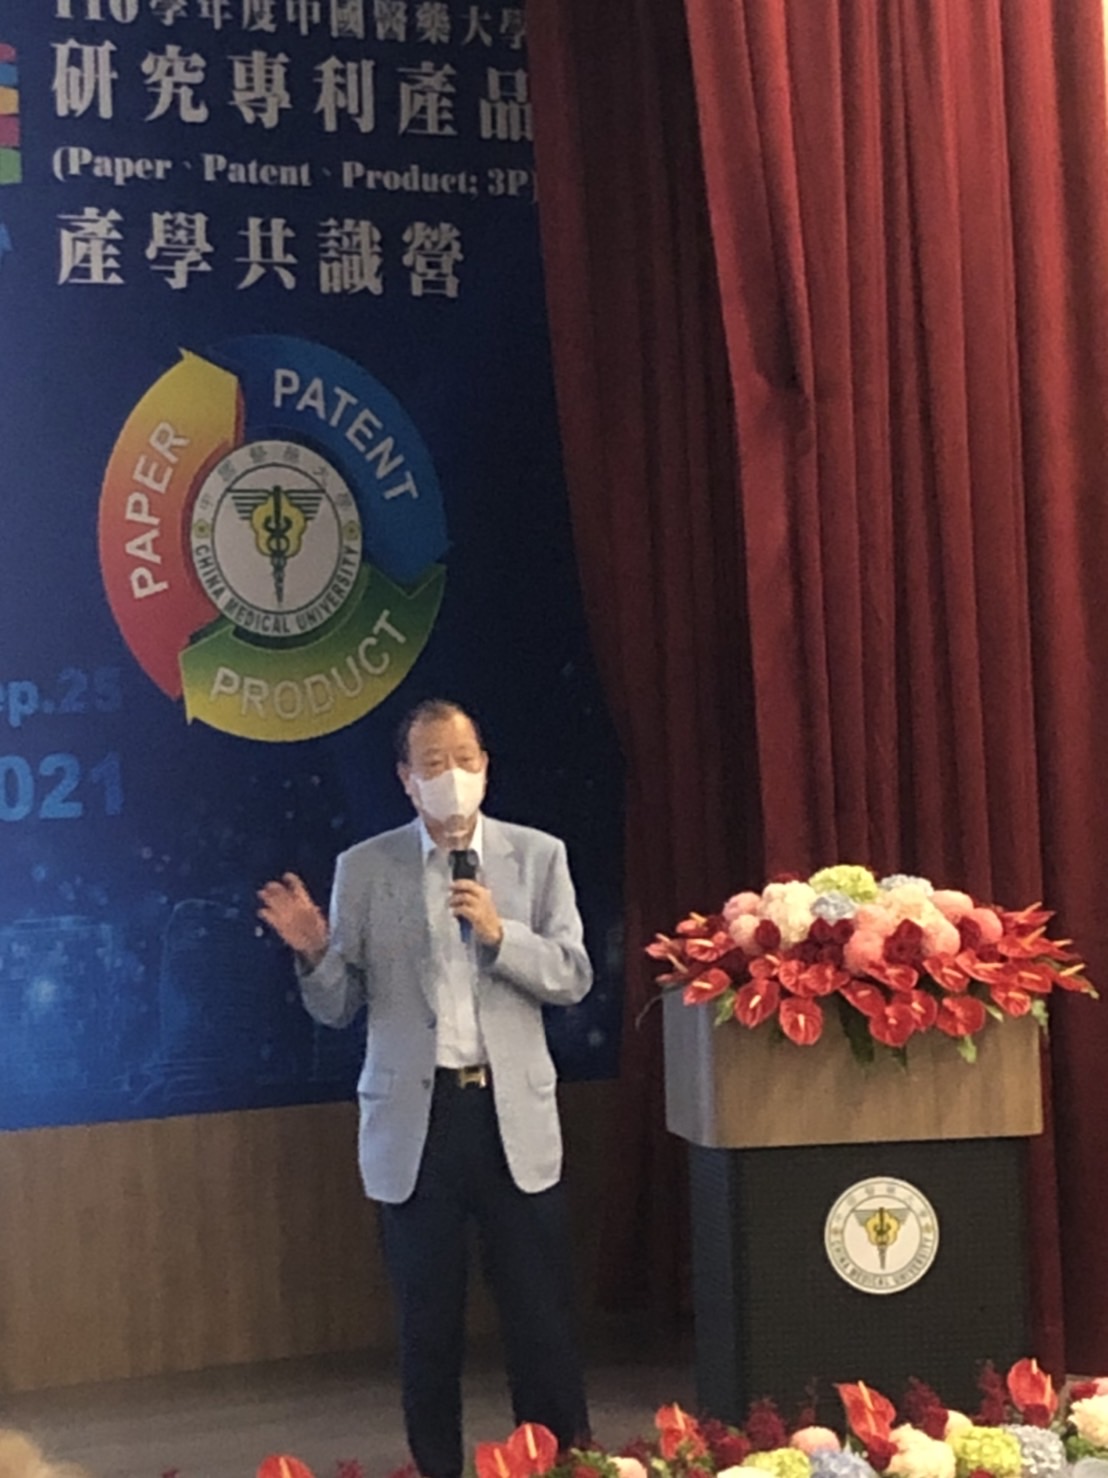 
	蔡長海董事長在3p產學共識營揭示發展目標。
